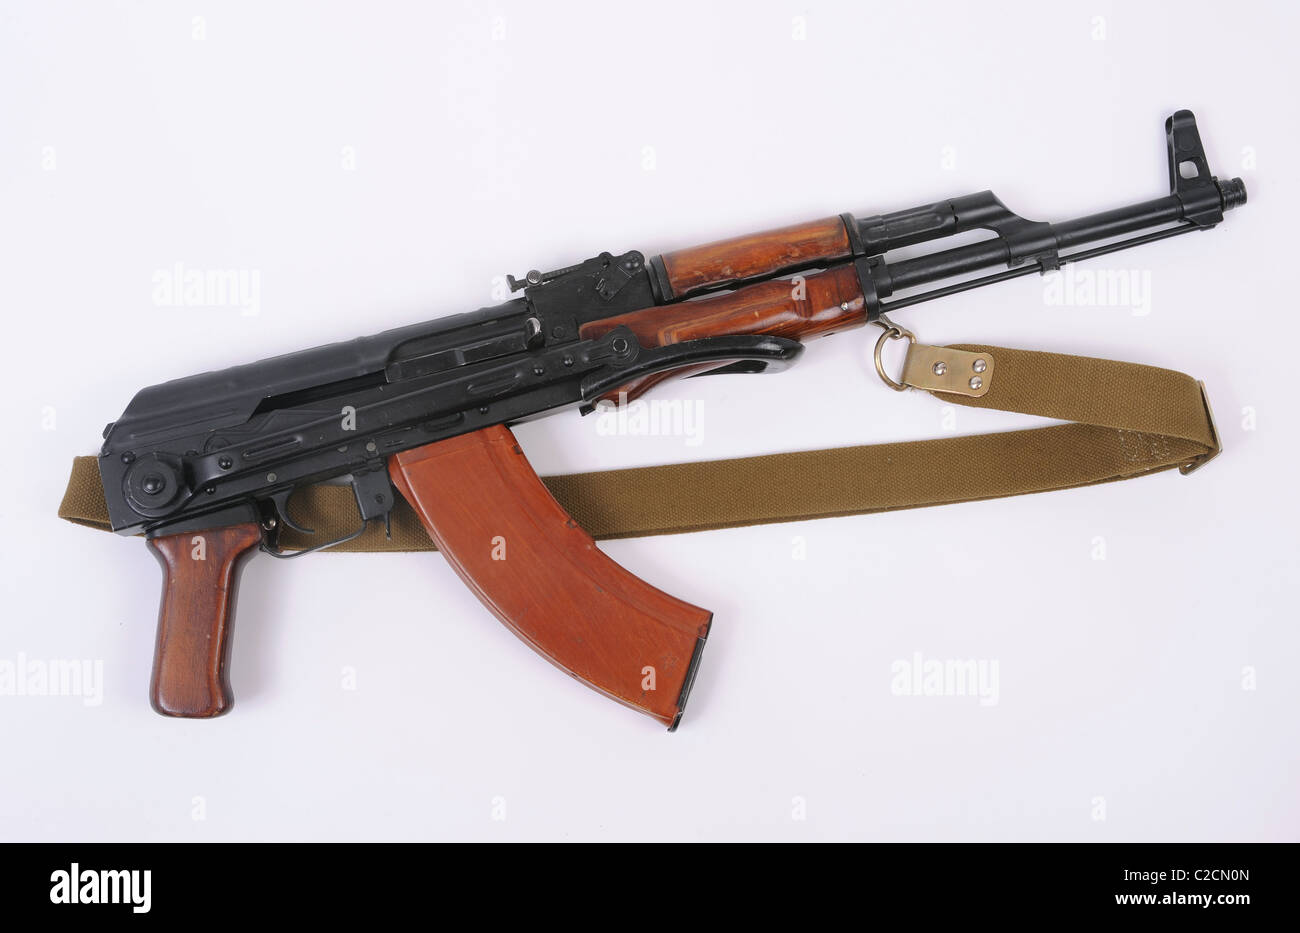 Russischen AKMS Gewehr. Faltbaren stock Version von der allgegenwärtigen AK47 Kalaschnikow modernisiert. Stockfoto